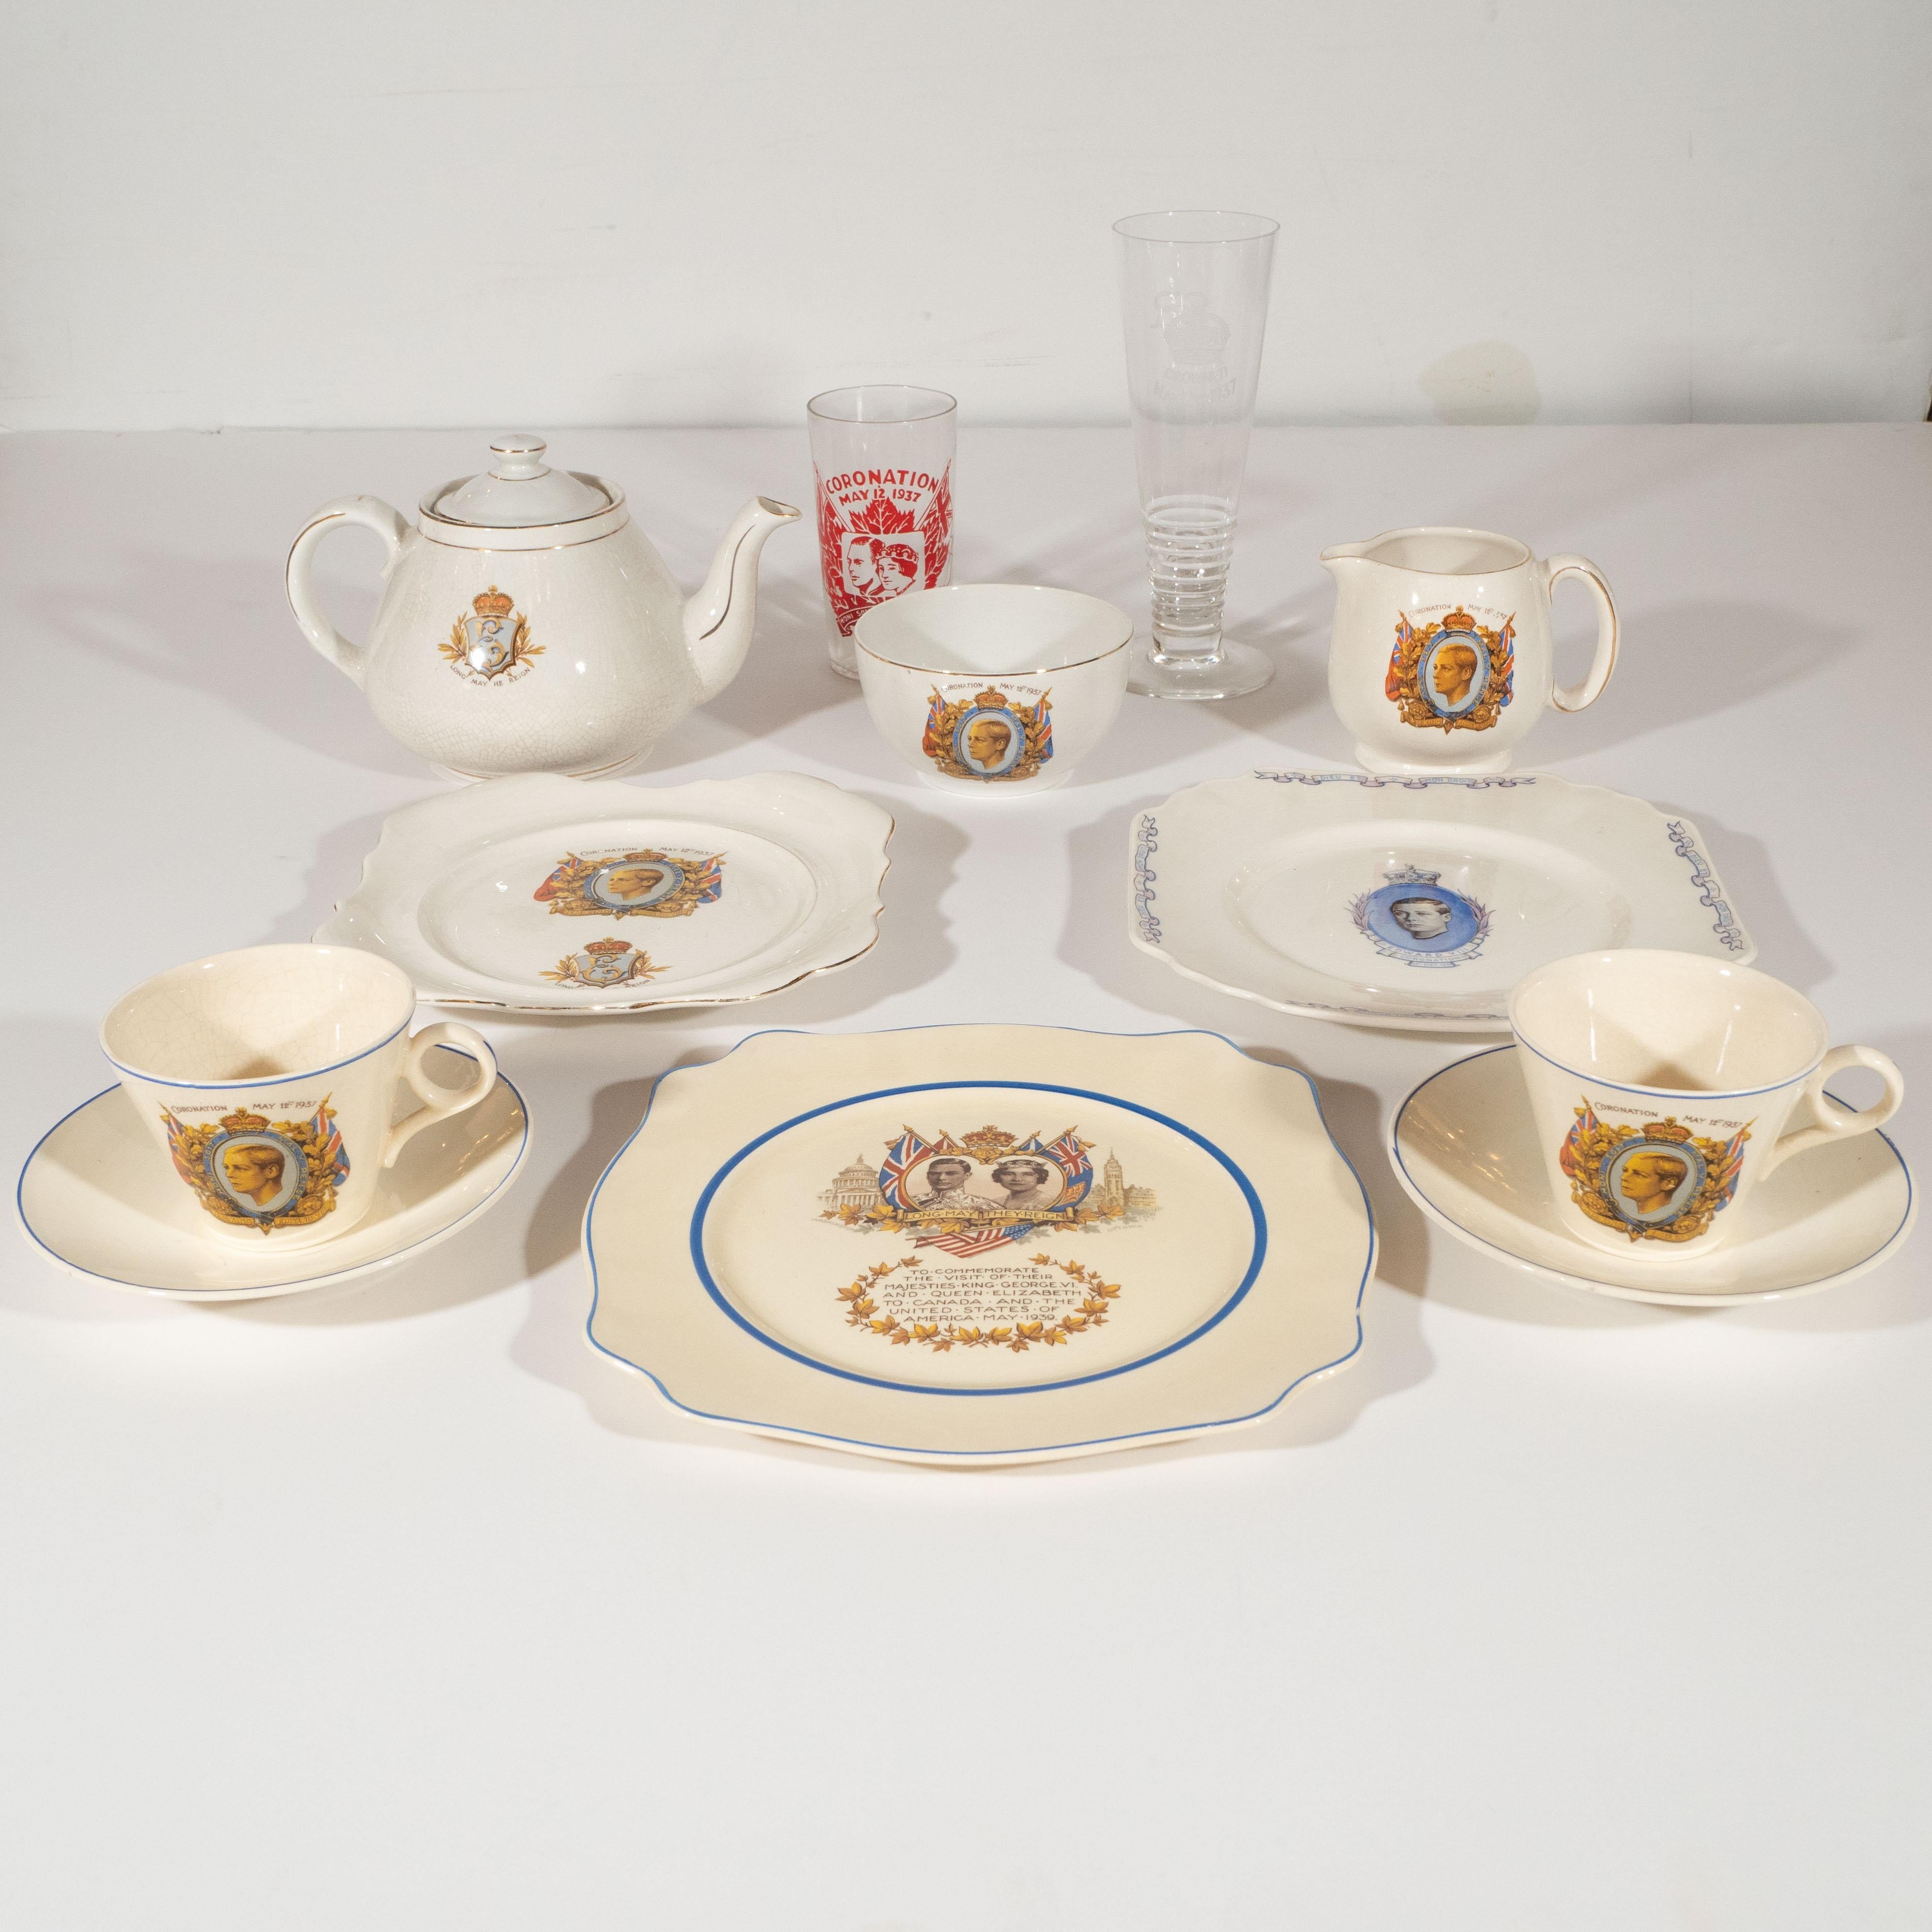 Cette collection d'articles commémoratifs anglais comprend un service à thé du couronnement d'Édouard VIII de 1937, deux assiettes du couronnement d'Édouard VIII de 1837, une flûte du couronnement d'Édouard VIII de 1937 et une assiette de 1939